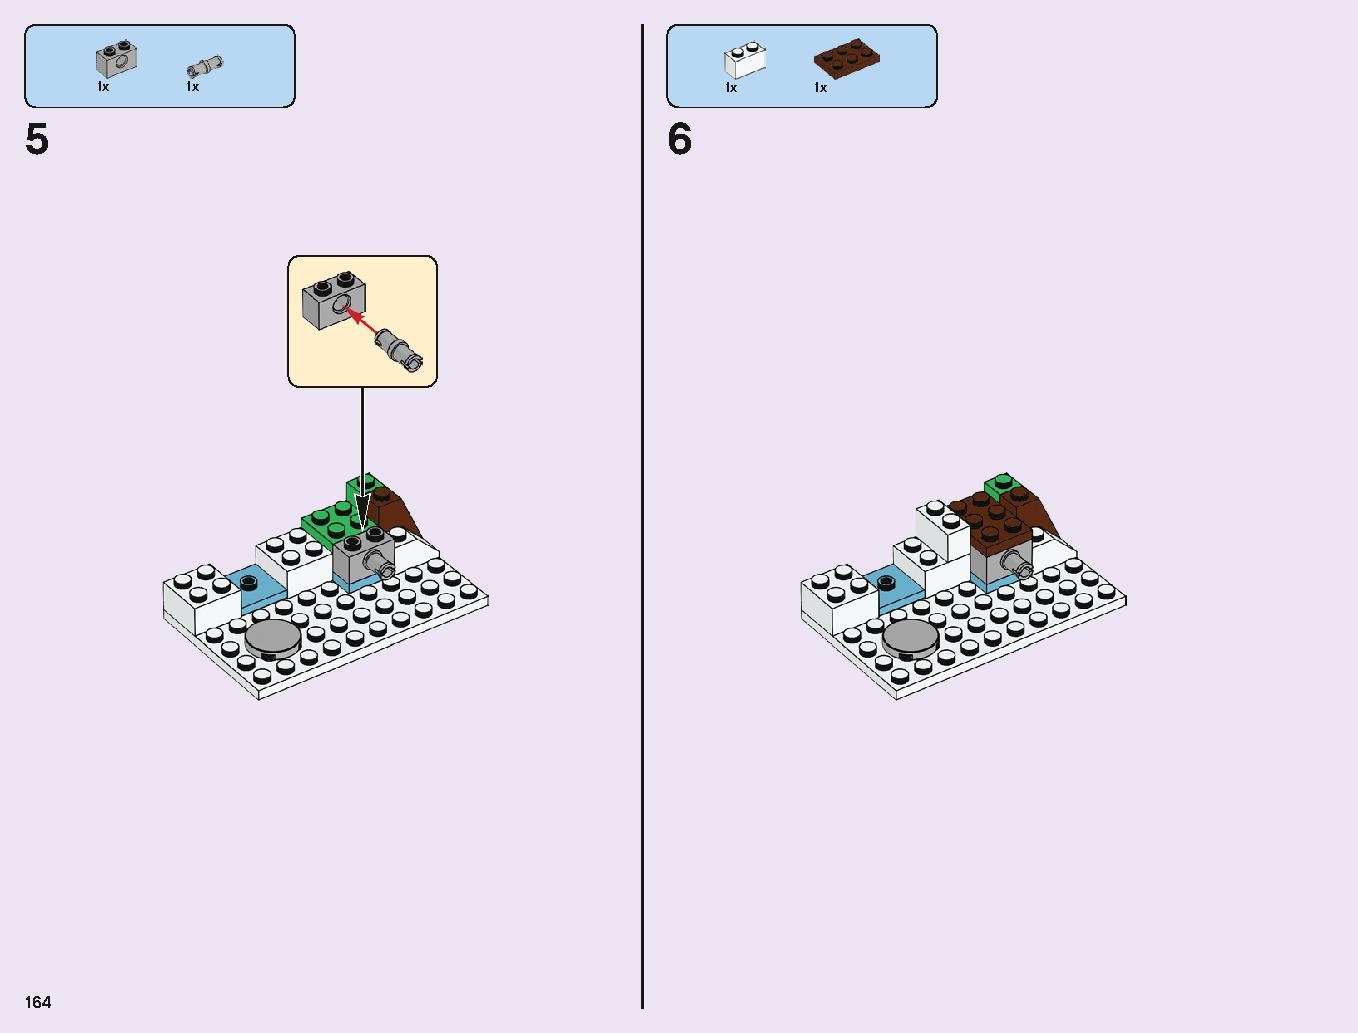 アナと雪の女王 “アイスキャッスル・ファンタジー” 43172 レゴの商品情報 レゴの説明書・組立方法 164 page